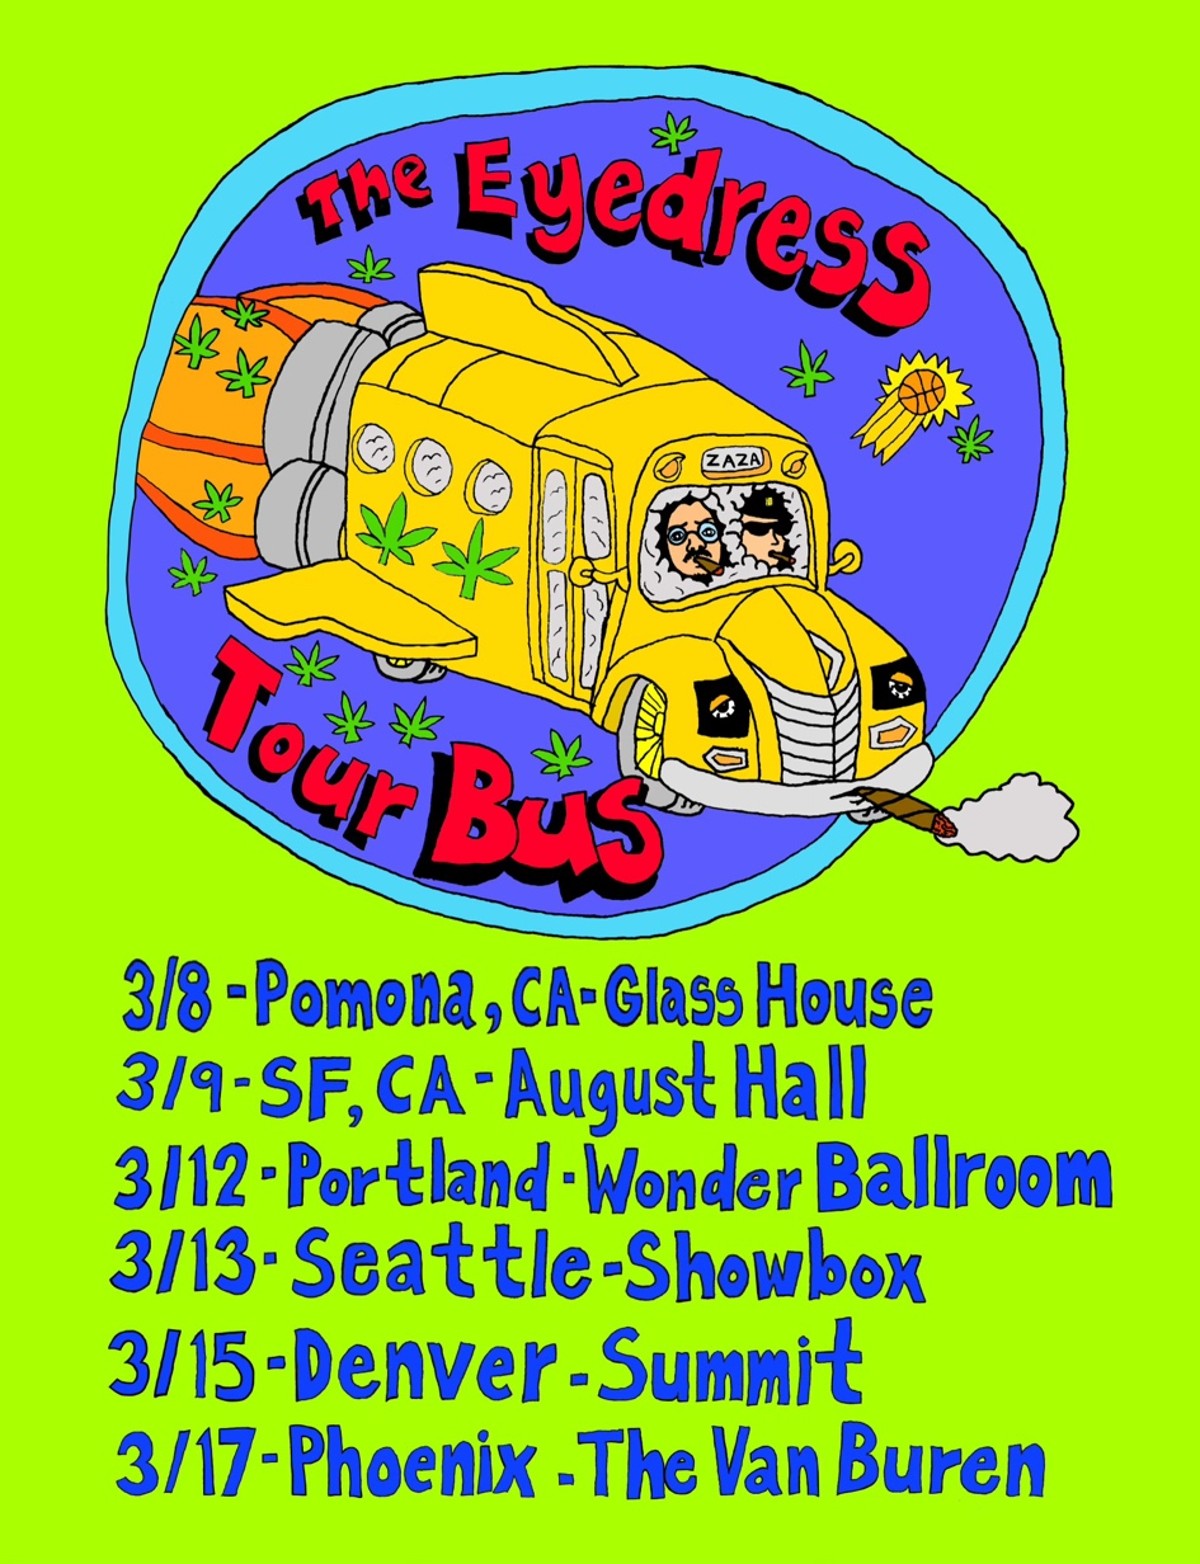 “The Eyedress Tour Bus” tour poster